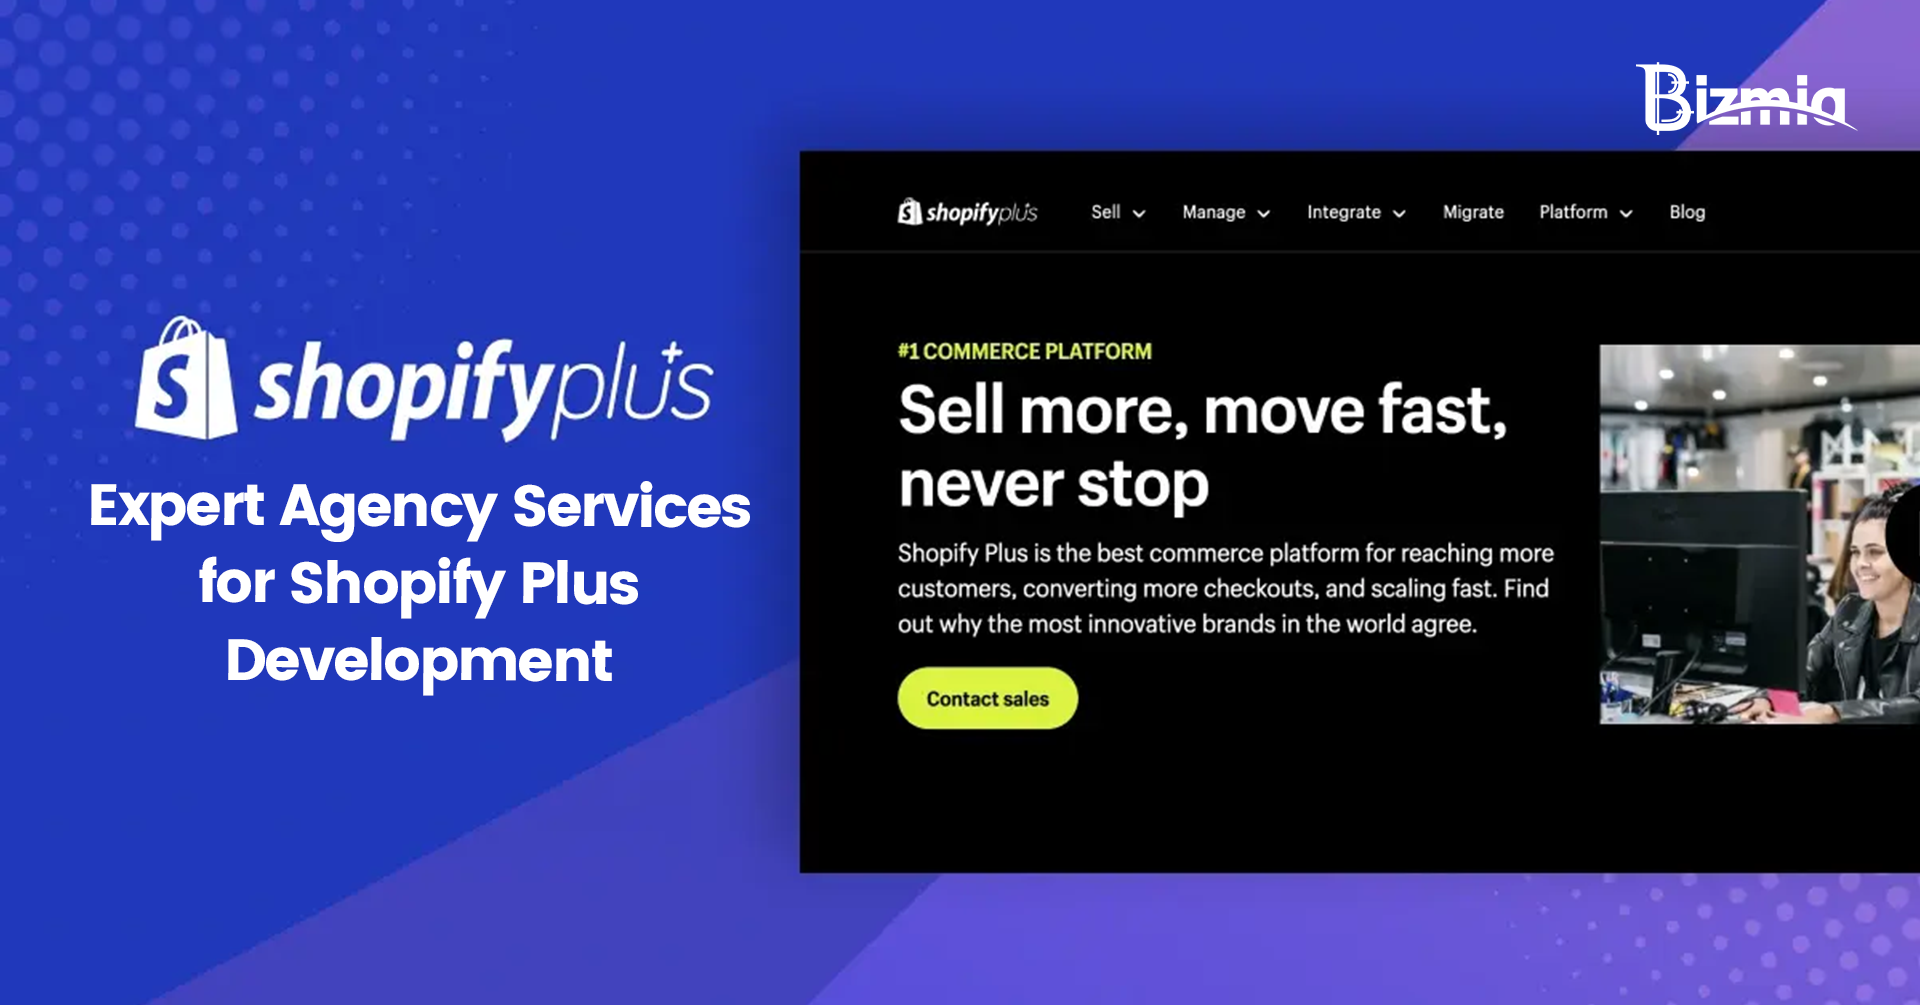 Shopify Plus expert agency services - Bizmia